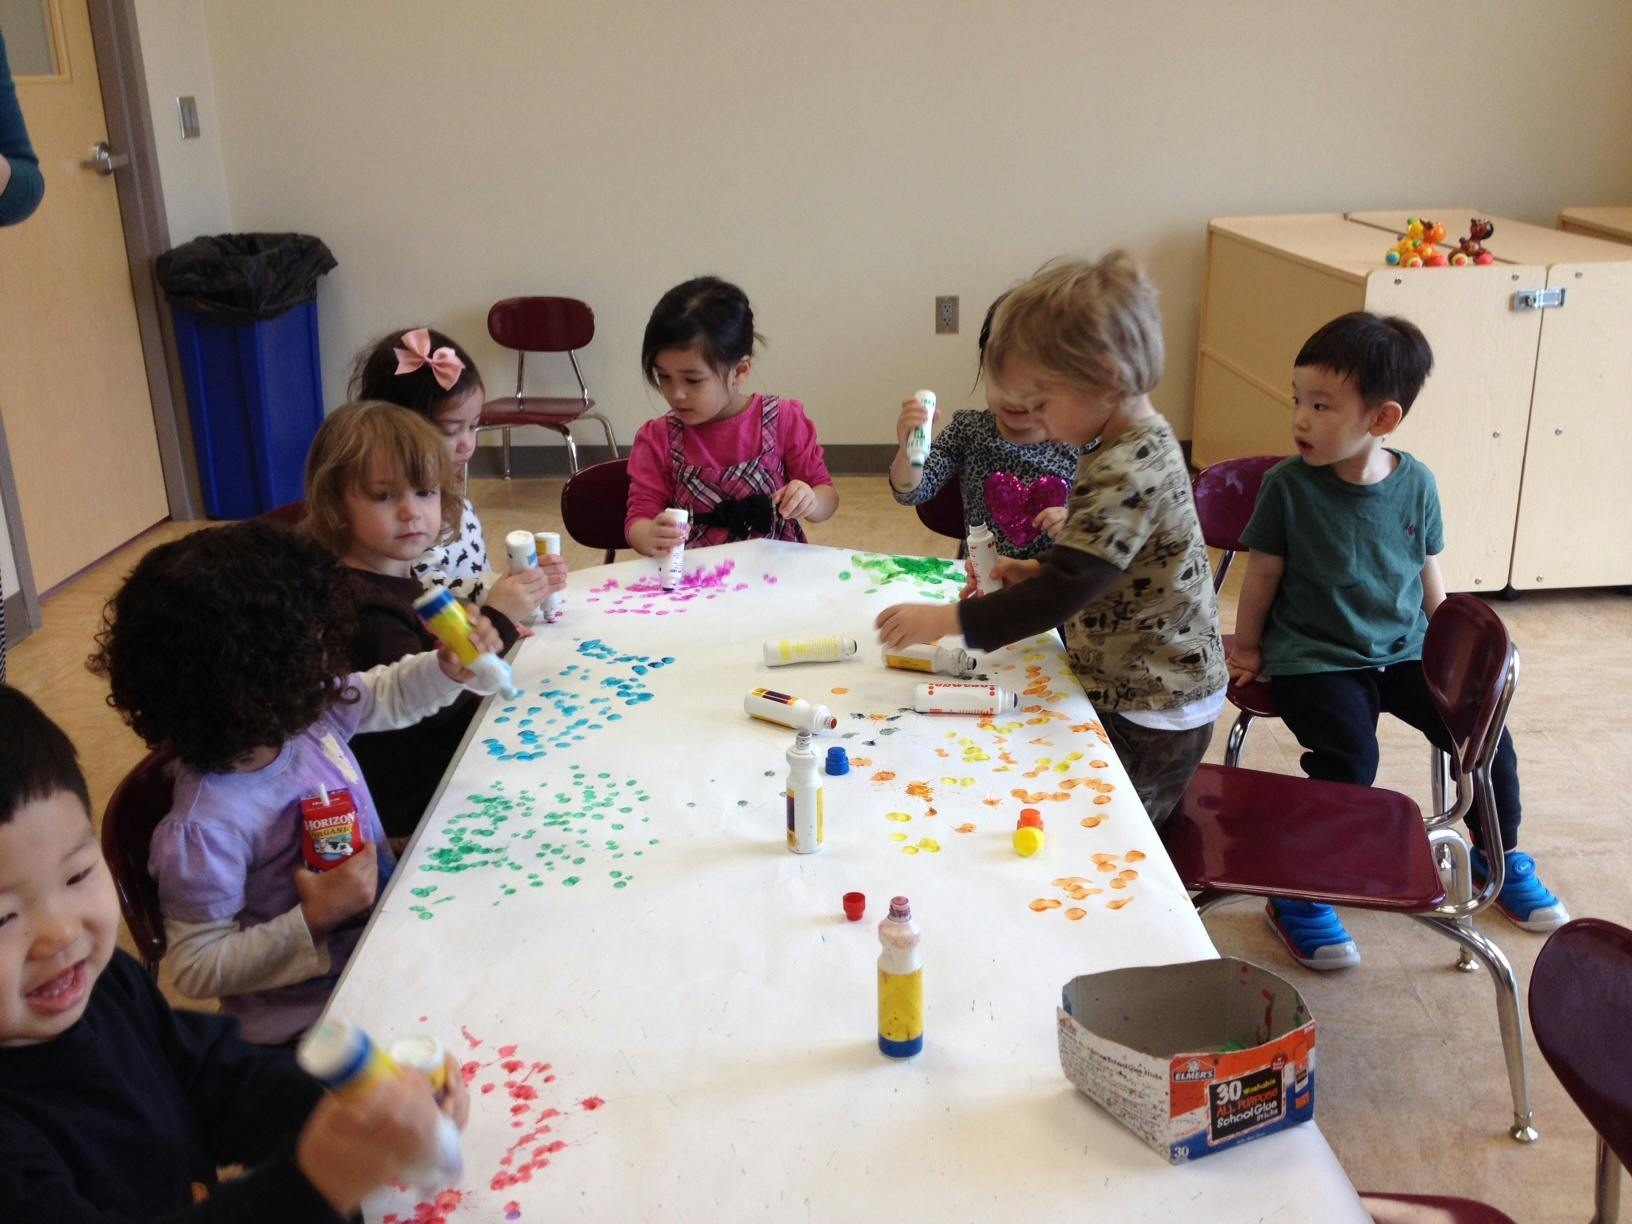 Preschool, Earlying Learning, Kindergarten - Fairfax, VA